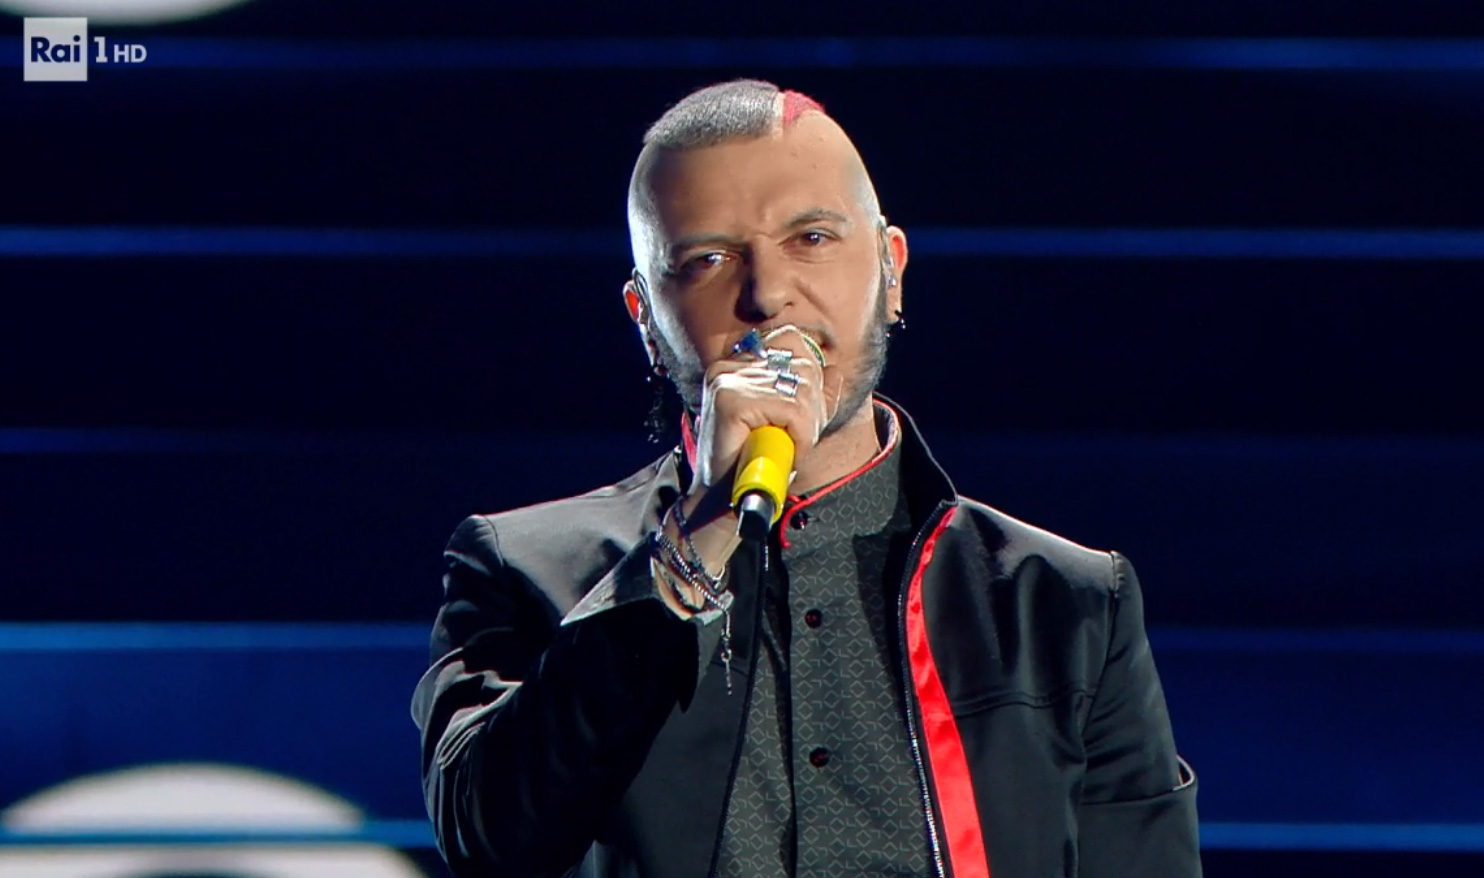 MARCO SENTIERI canta 'Billy Blu' nella semifinale della sezione Nuove Proposte di Sanremo 2020